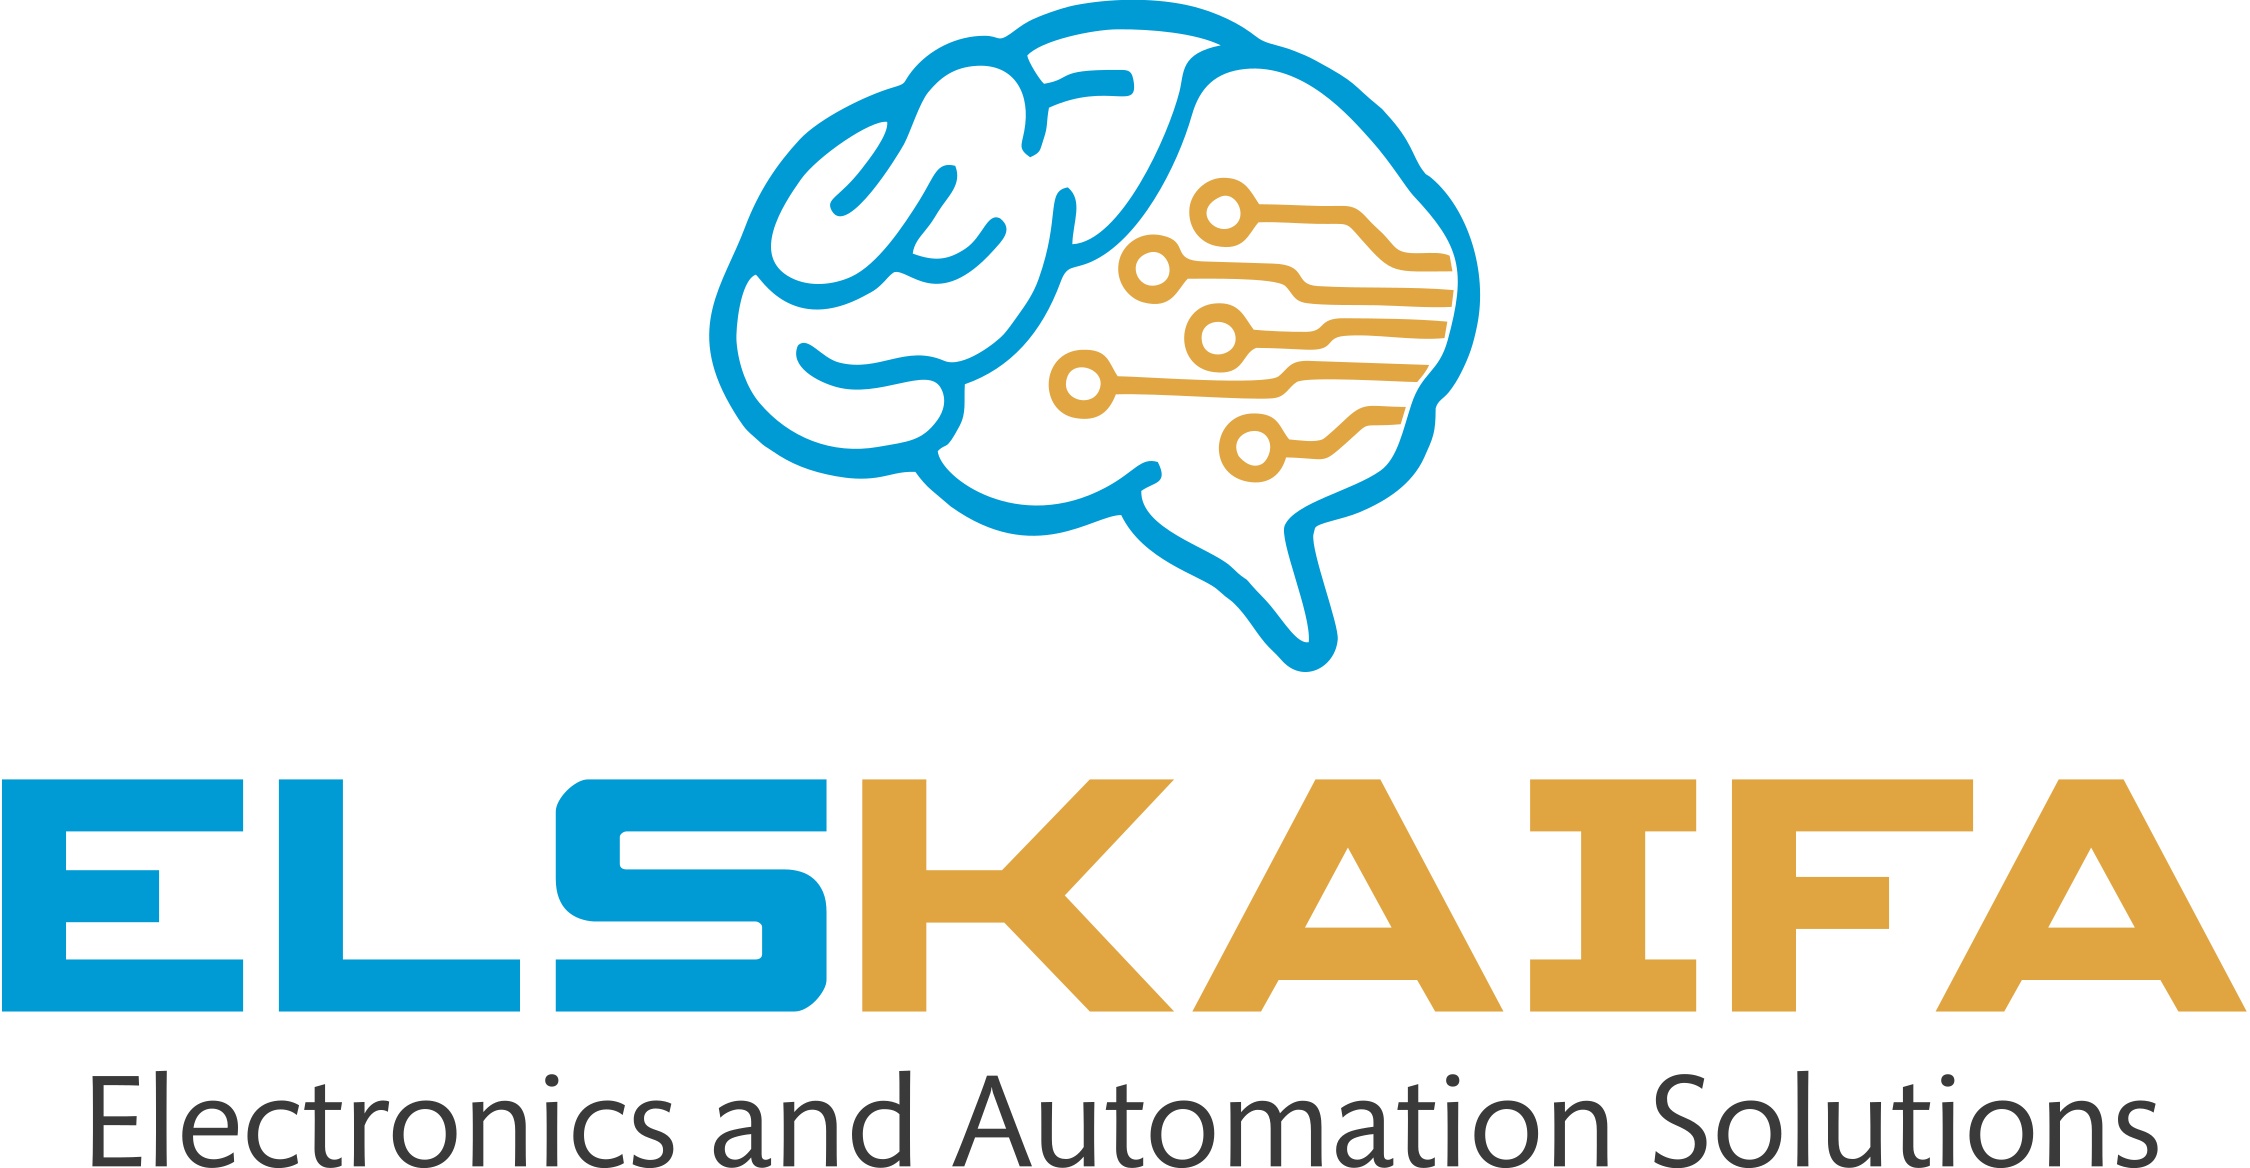 ELSKAIFA – Inžineriniai elektronikos ir automatikos sprendimai